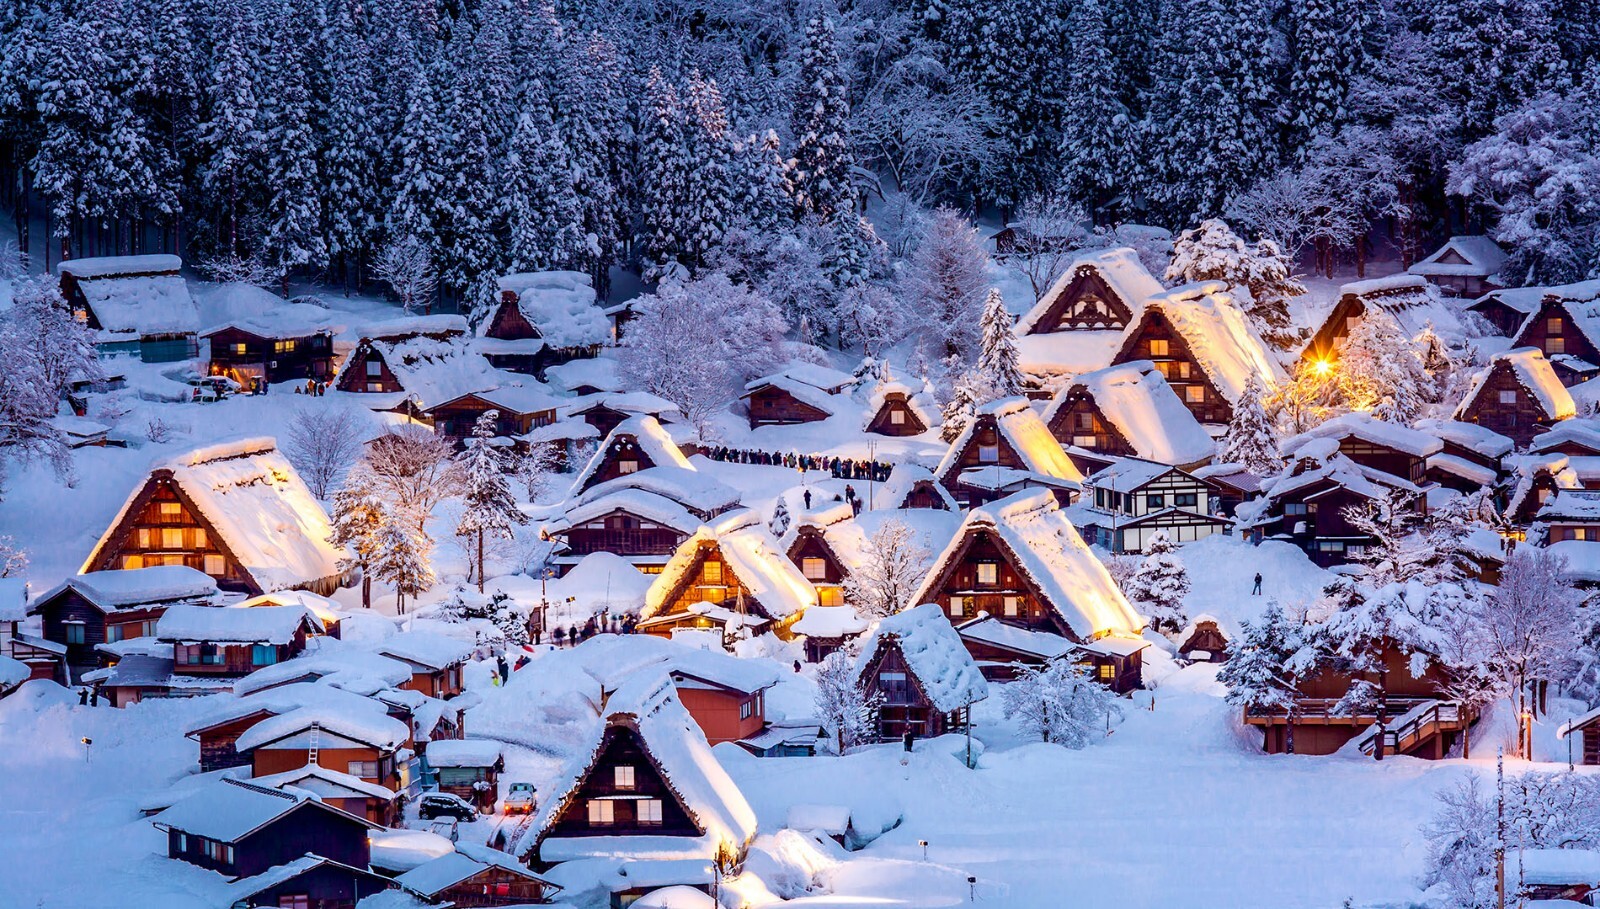 日本雪景手机壁纸图片